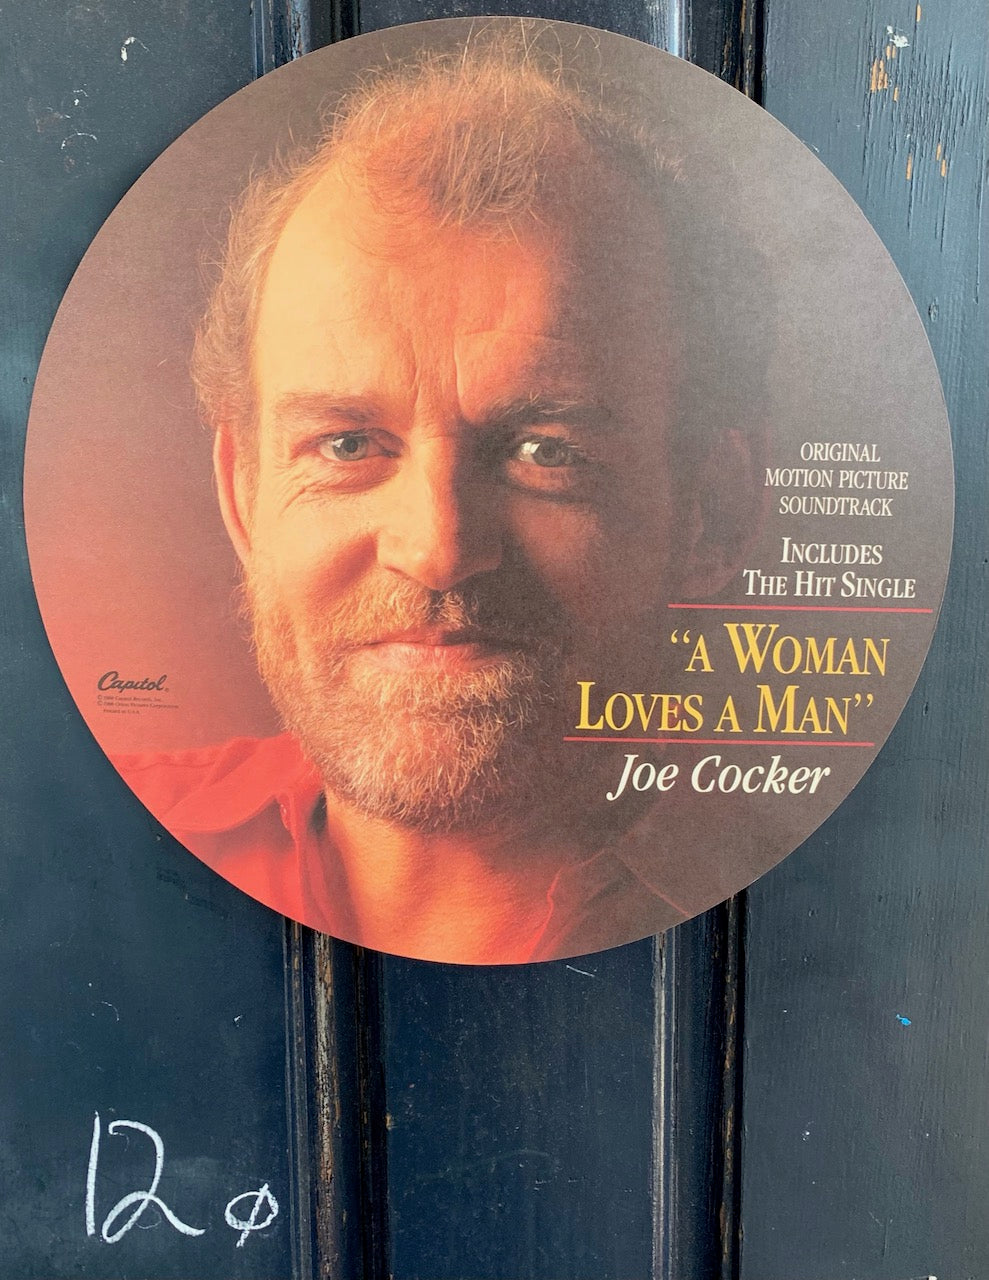 Joe Cocker "Bill Durham- When a Woman Loves a Man" Album Flat